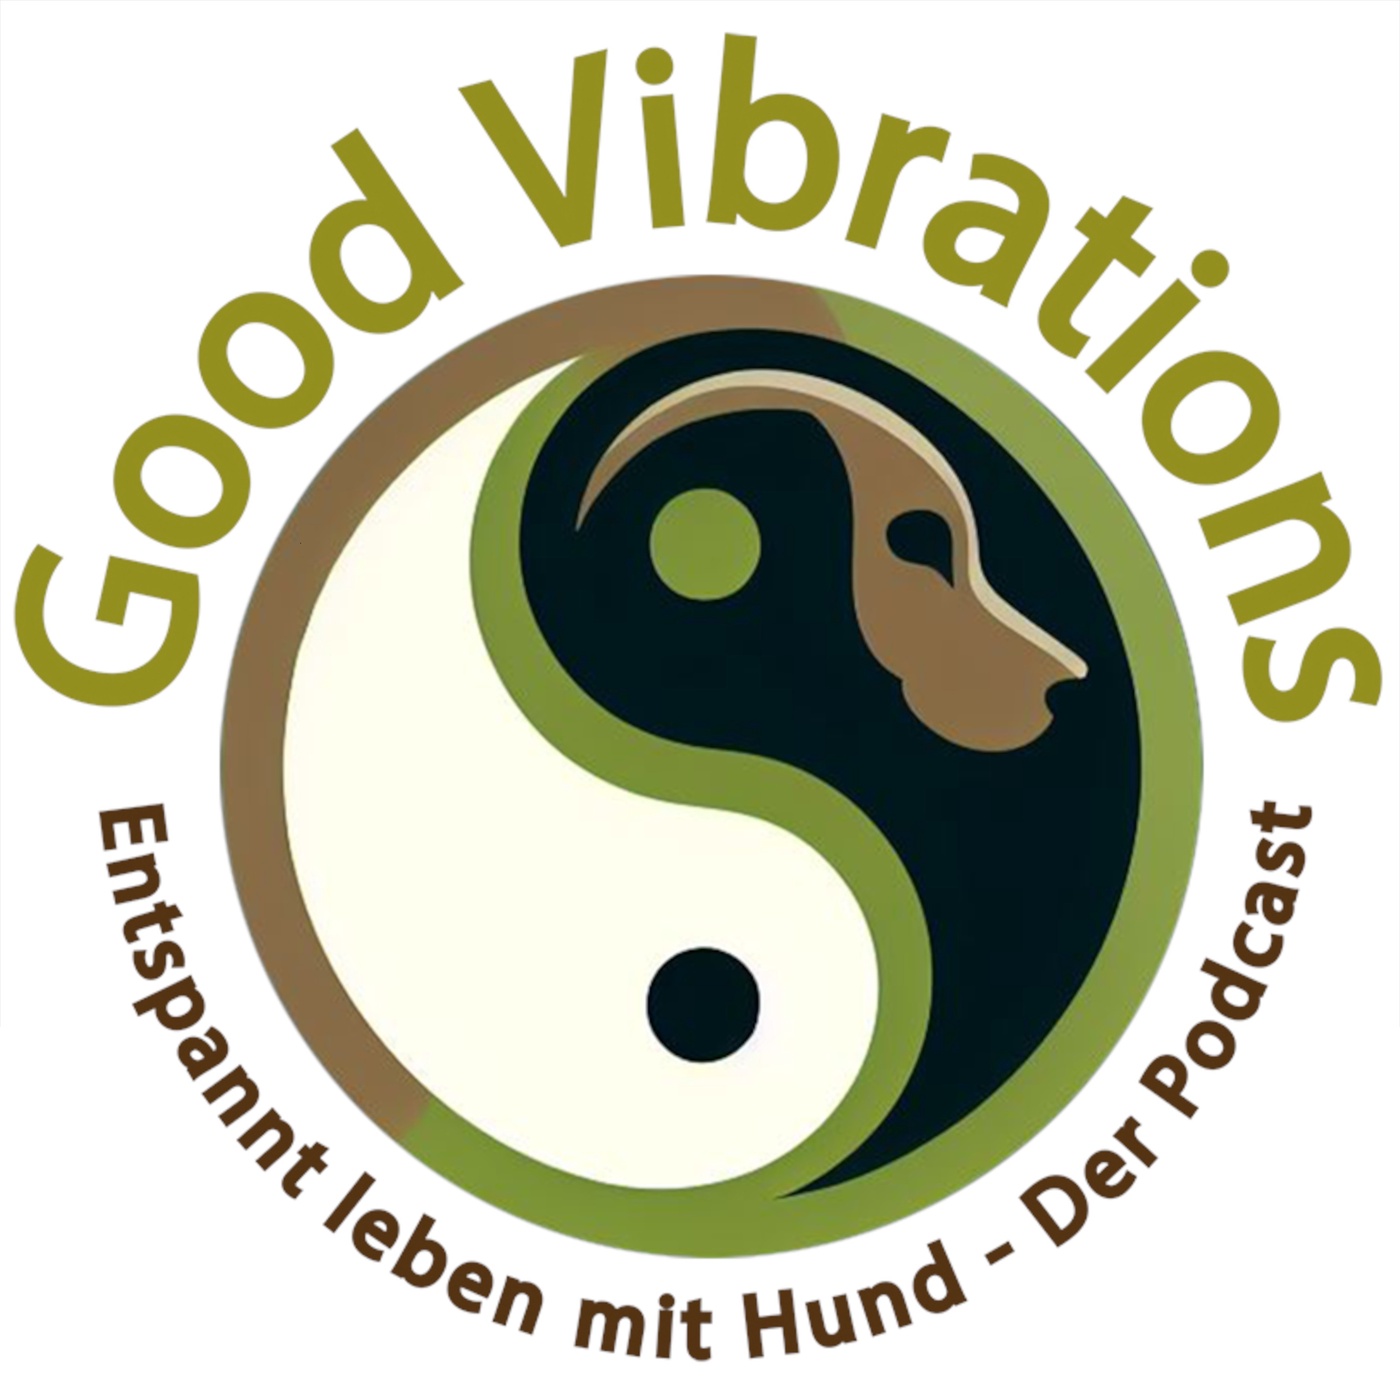 Good Vibrations. Entspannt leben mit Hunden. Der Podcast.